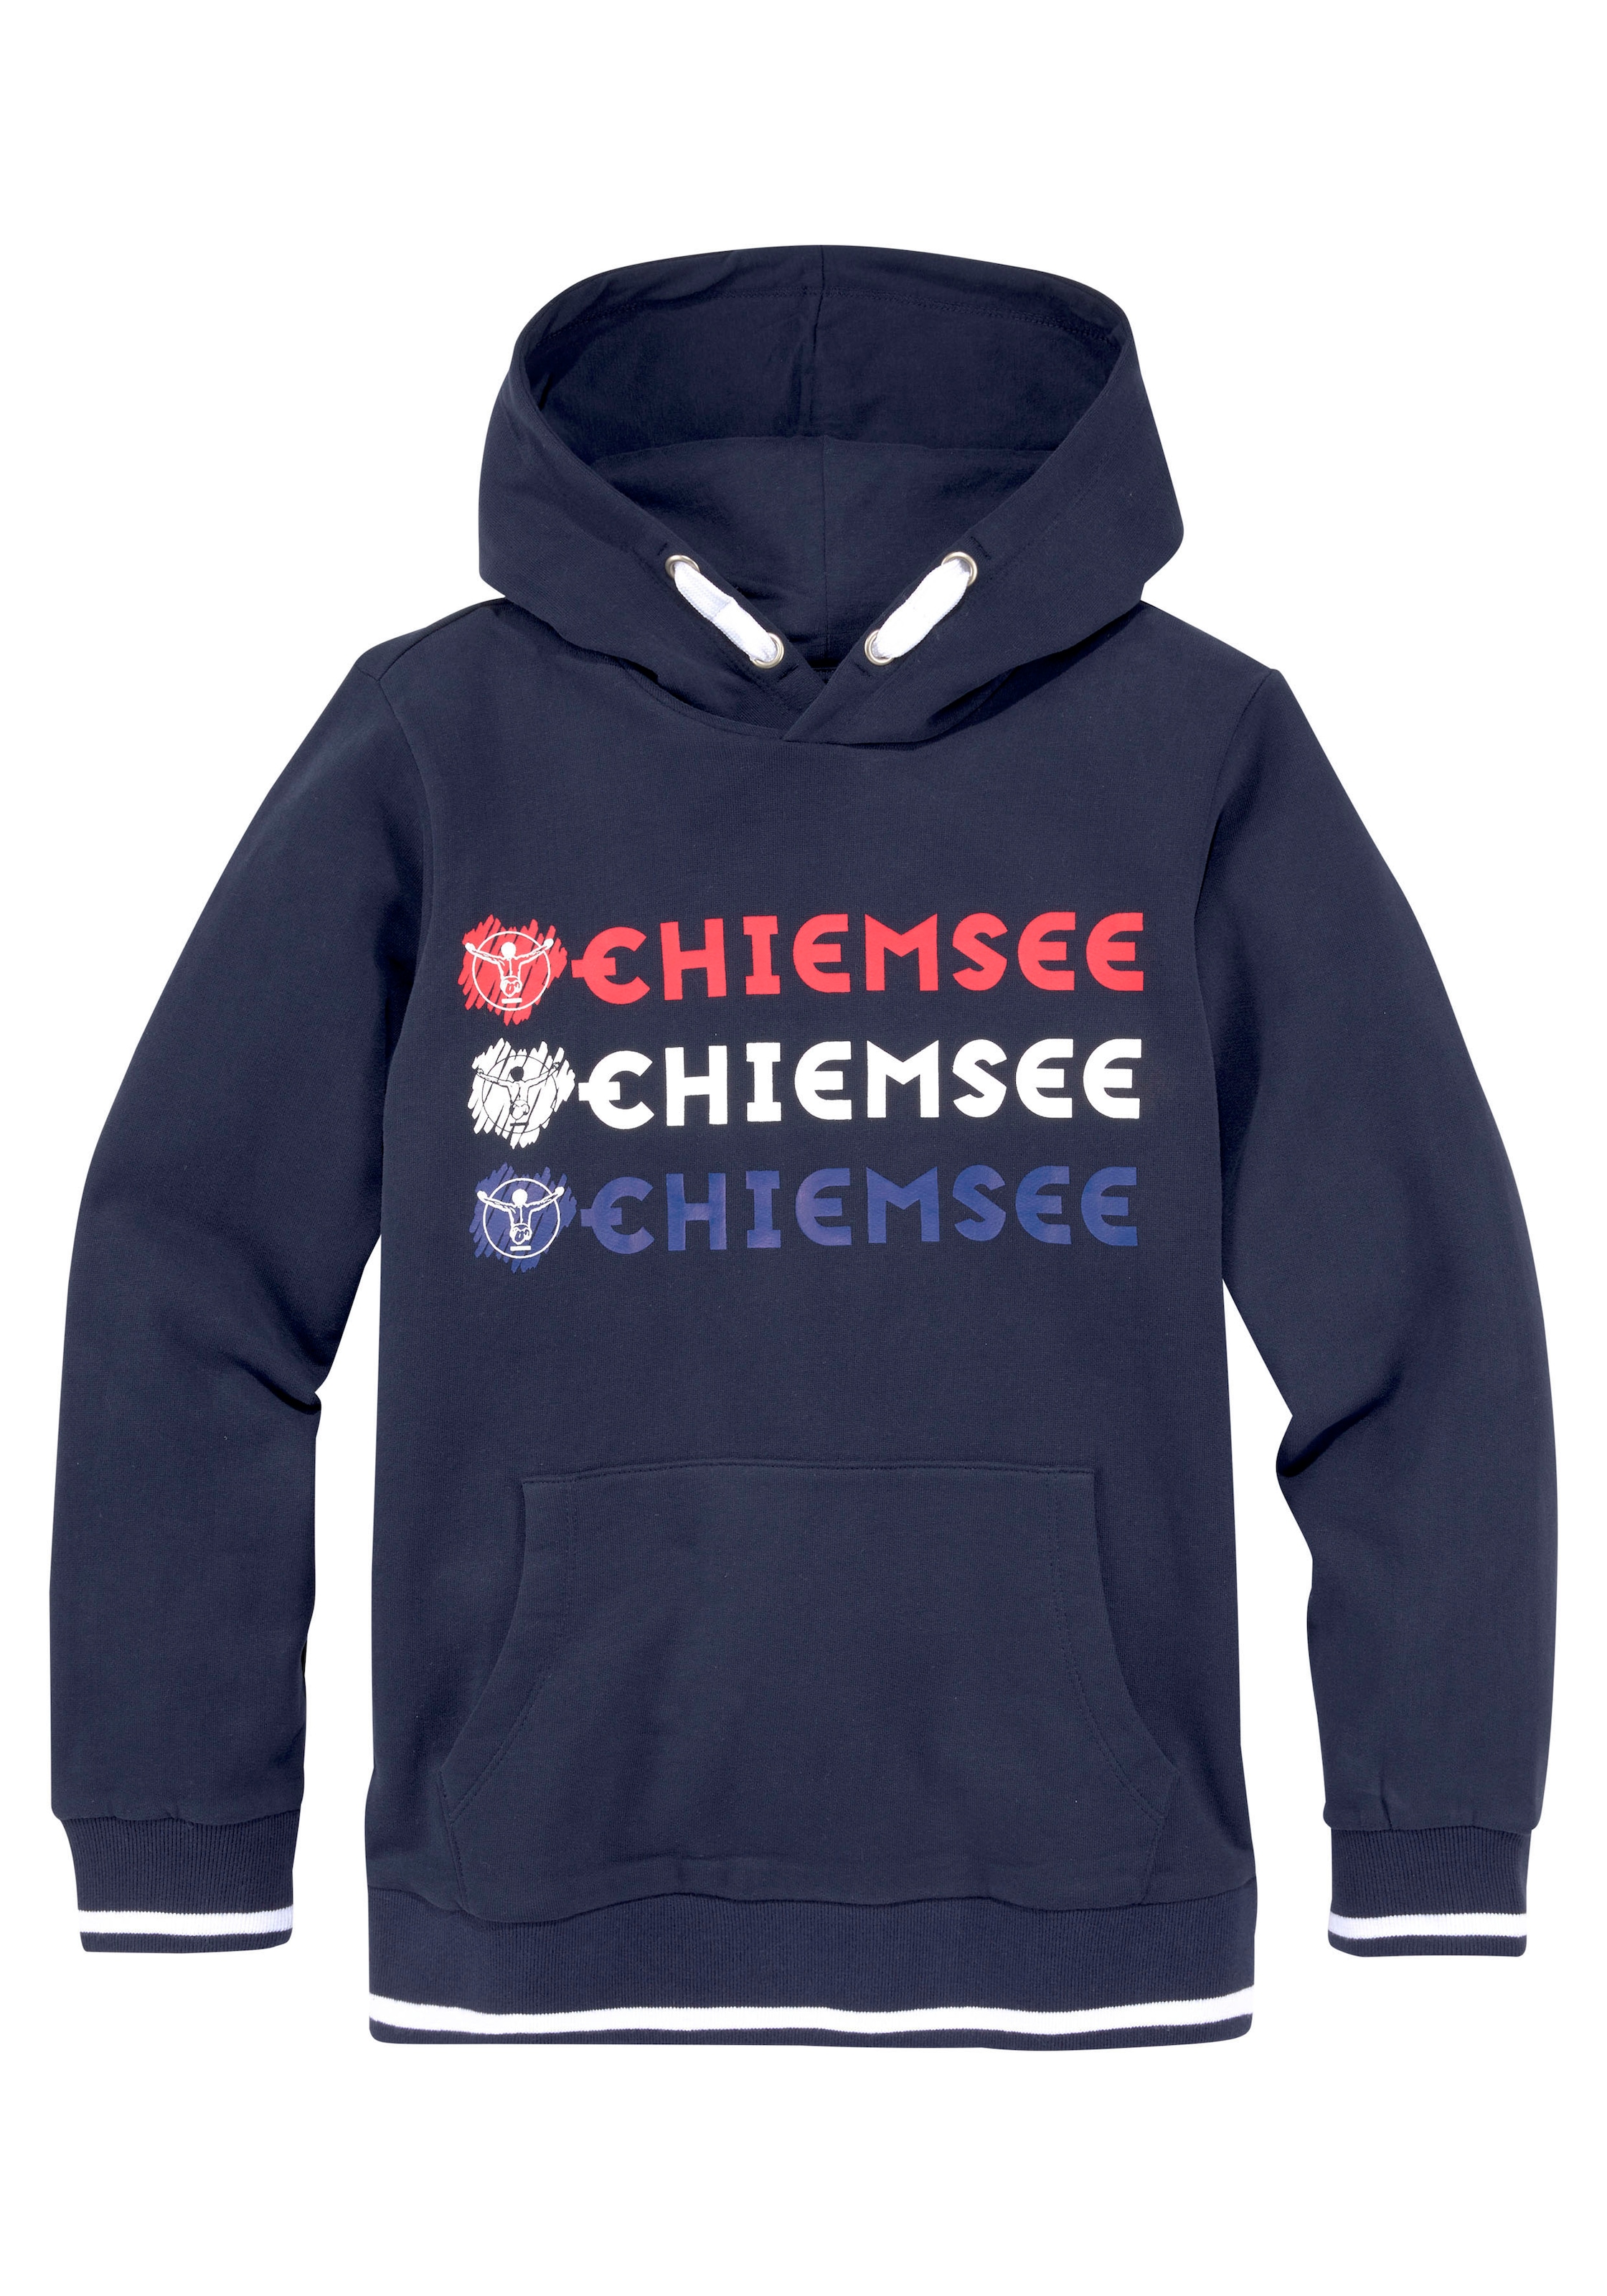 Chiemsee : T-shirt en sweat à capuche